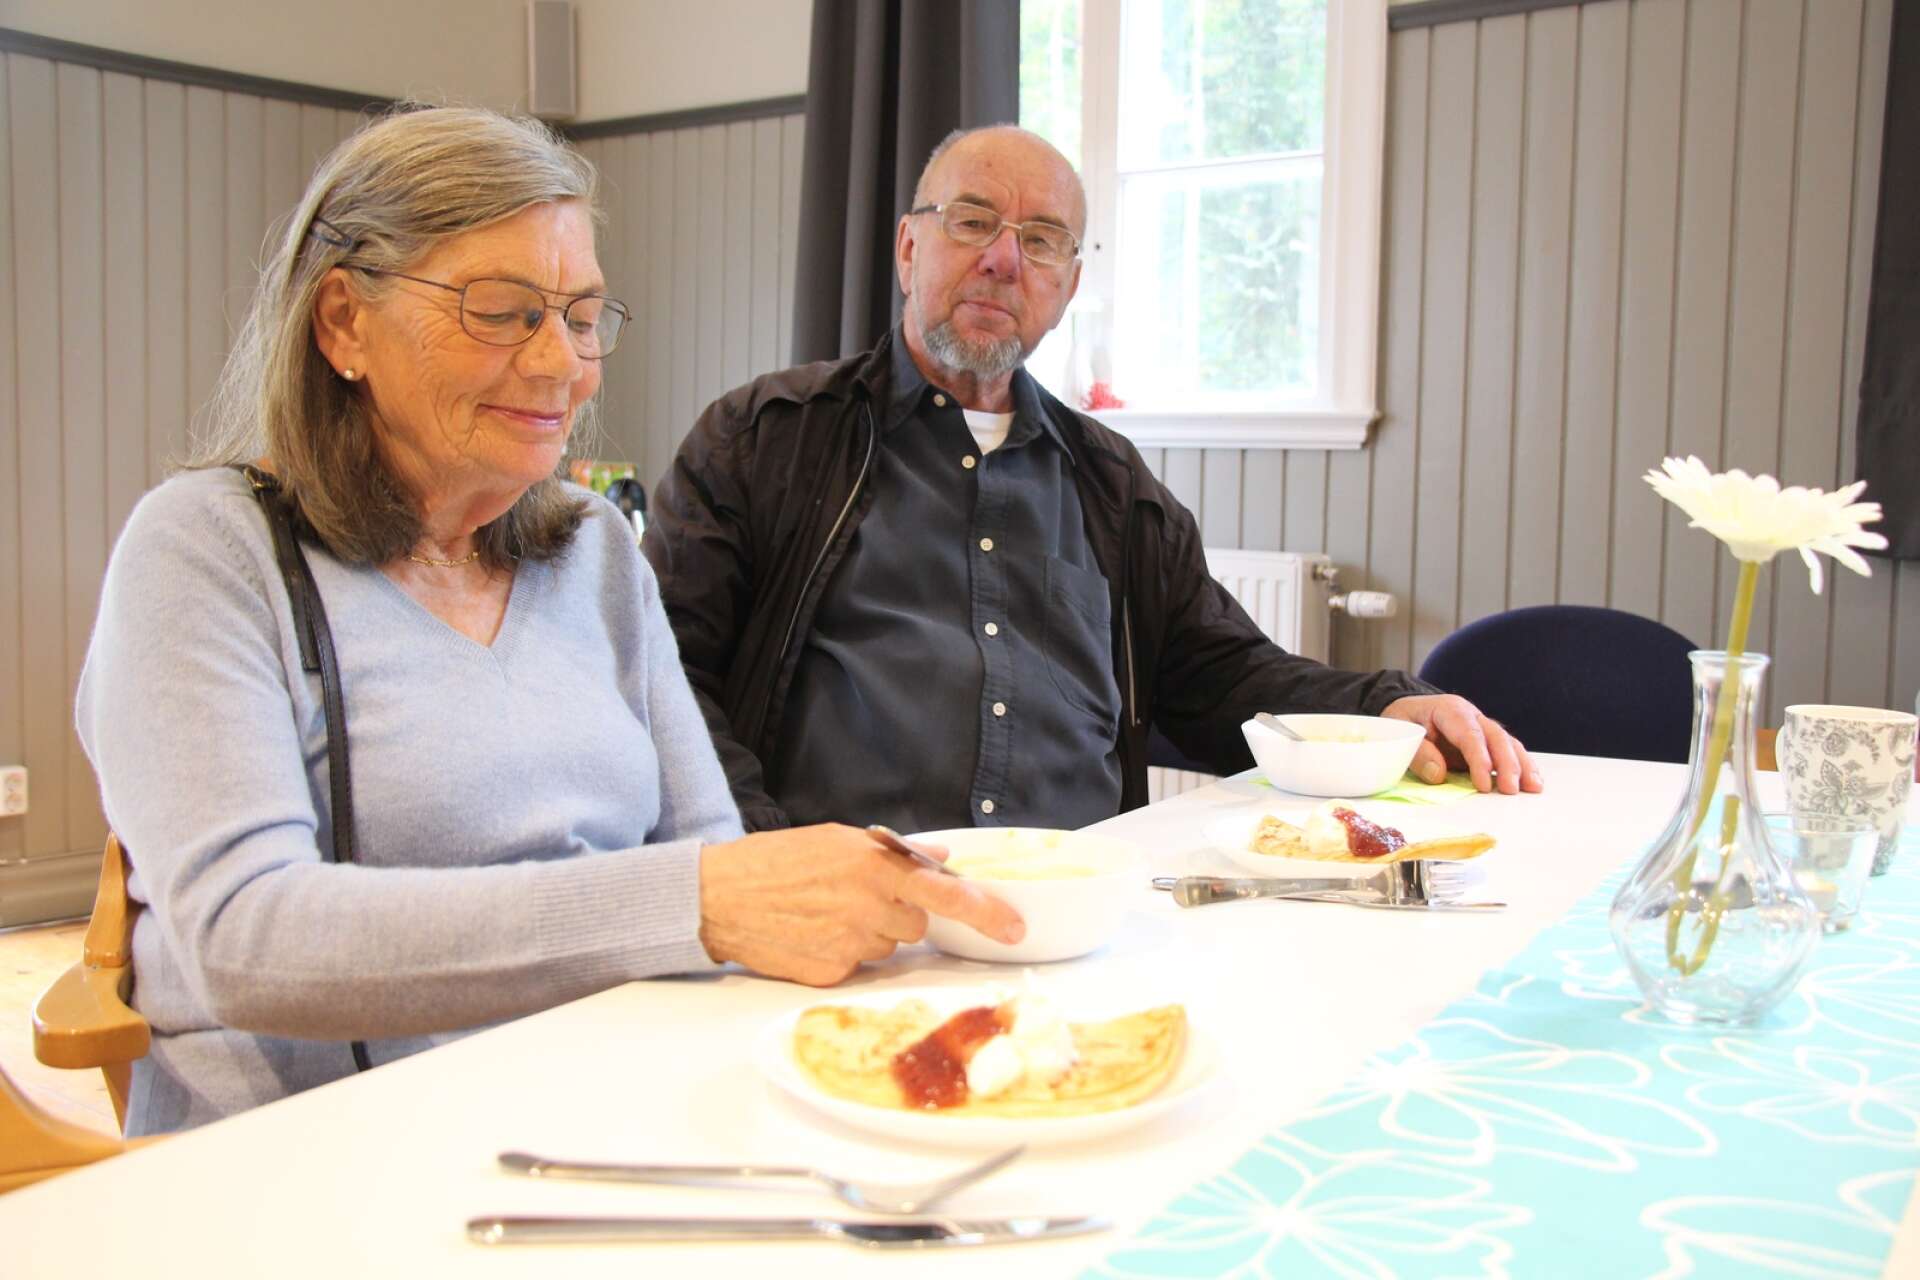 Viveka och Jan Bengtsson lät sig väl smaka av maten. ”Vidunderligt gott”, blev utlåtande om Mona Gustavsson ärtsoppa.